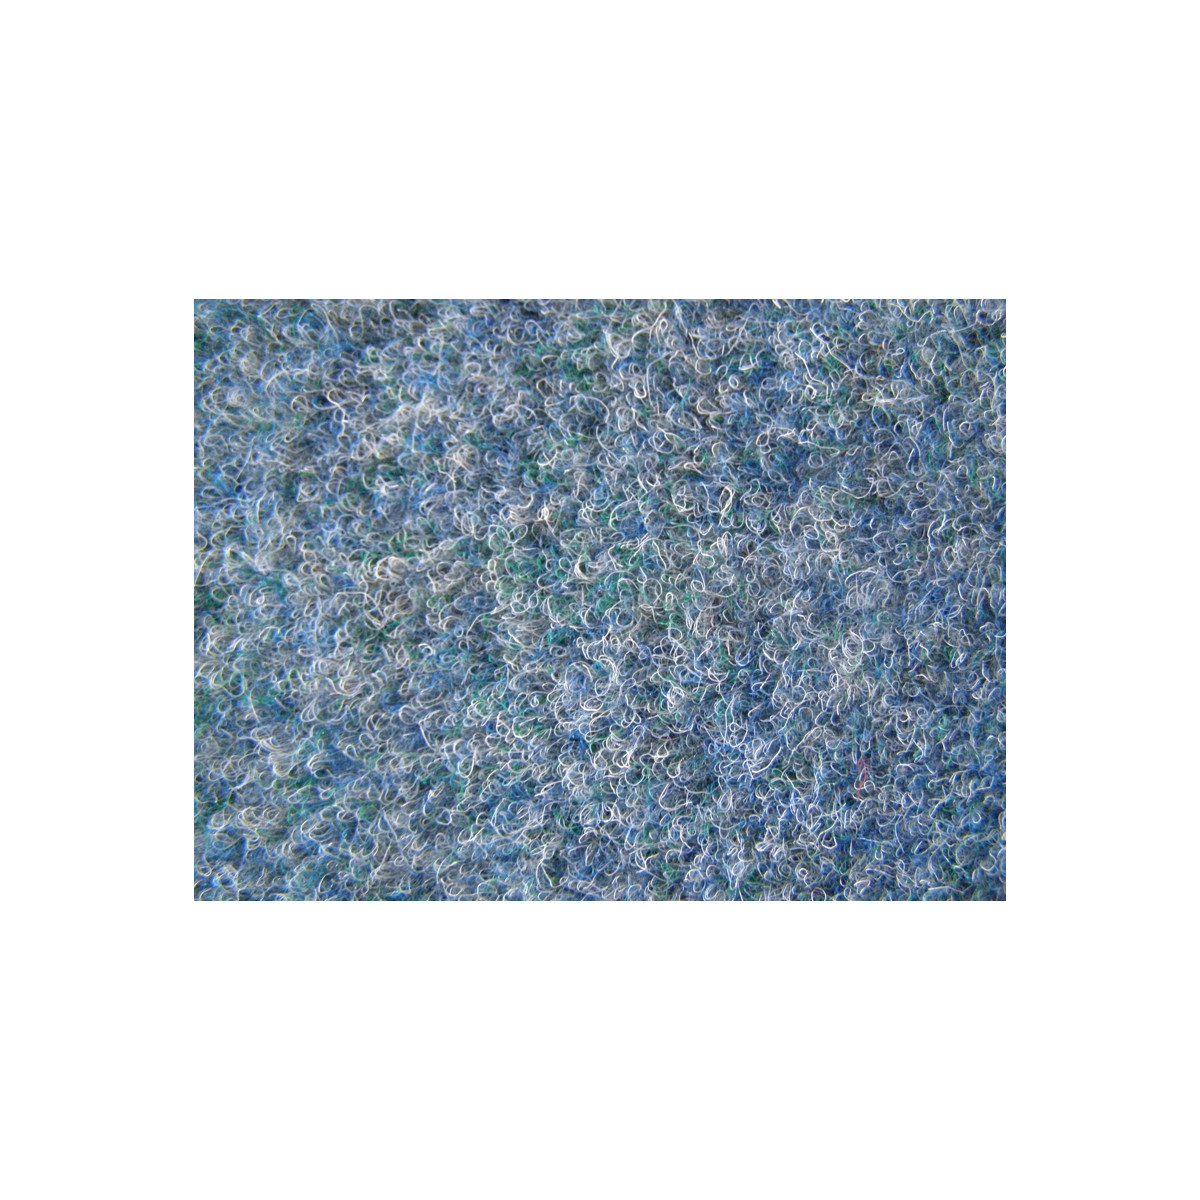 Metrážový koberec Rambo 77 modrý, zátěžový